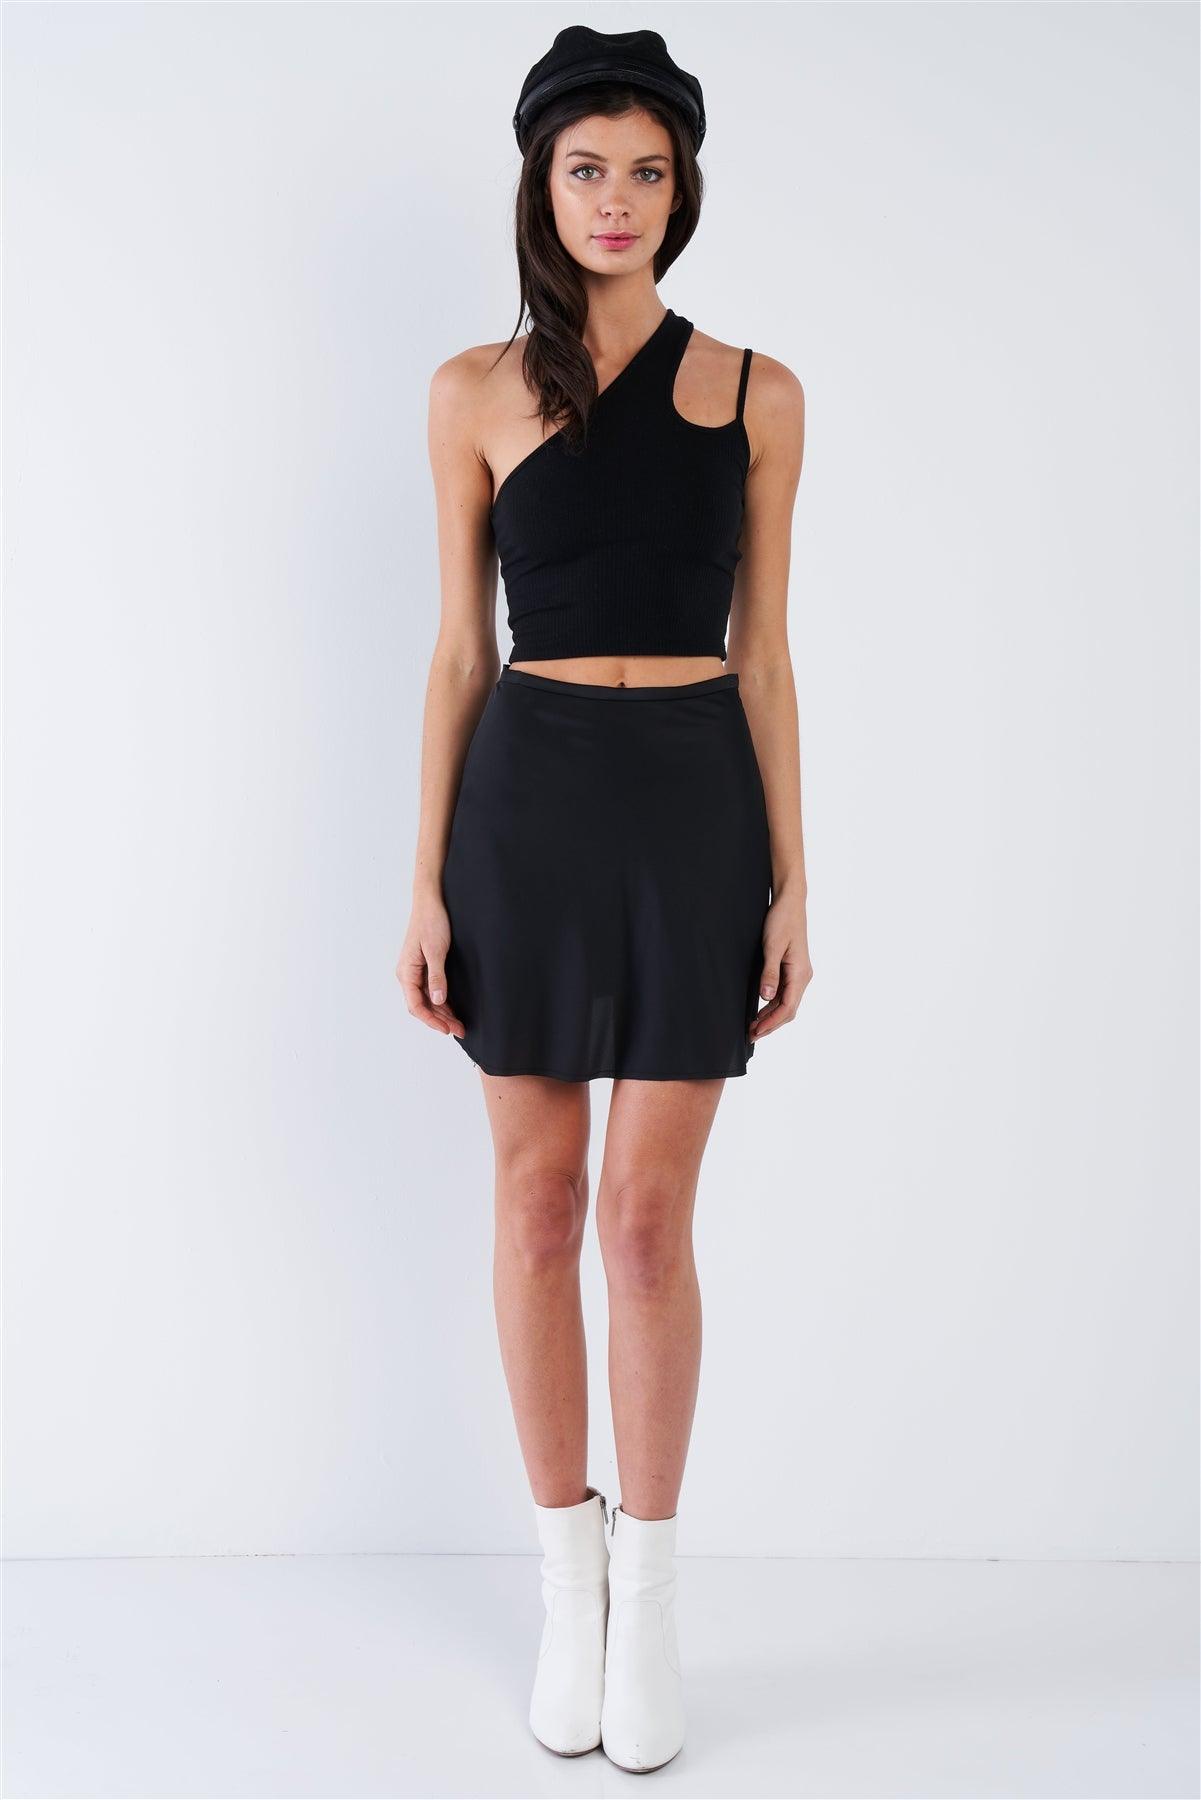 Black Silk Flare Raw Hem Solid Mini Skirt  /3-2-1